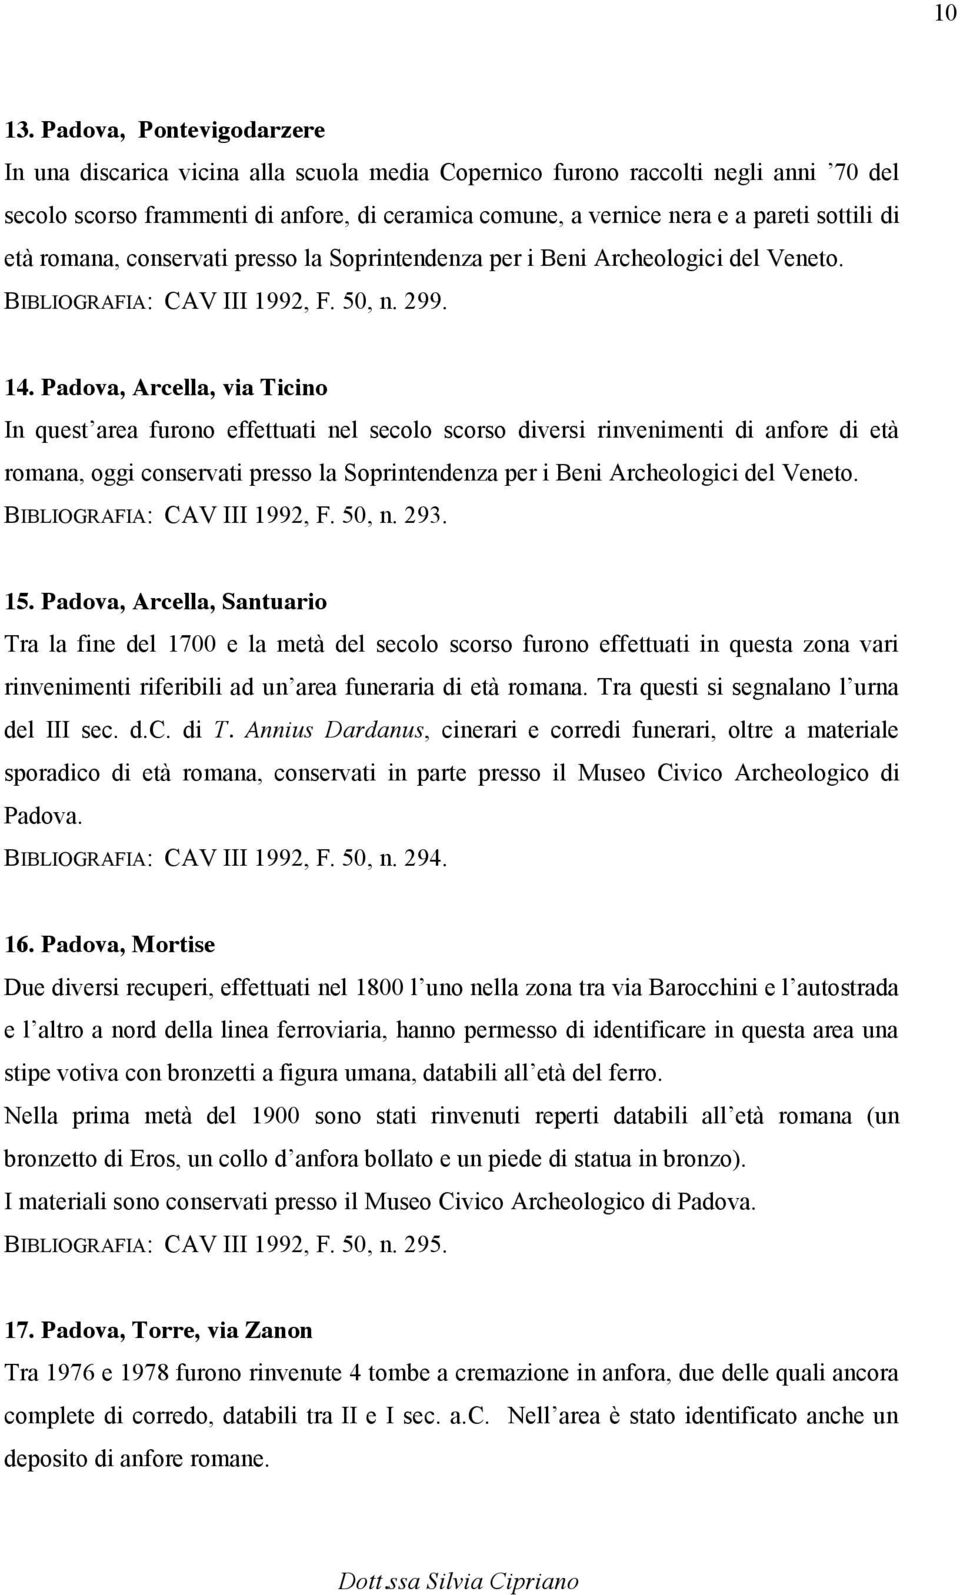 di età romana, conservati presso la Soprintendenza per i Beni Archeologici del Veneto. BIBLIOGRAFIA: CAV III 1992, F. 50, n. 299. 14.